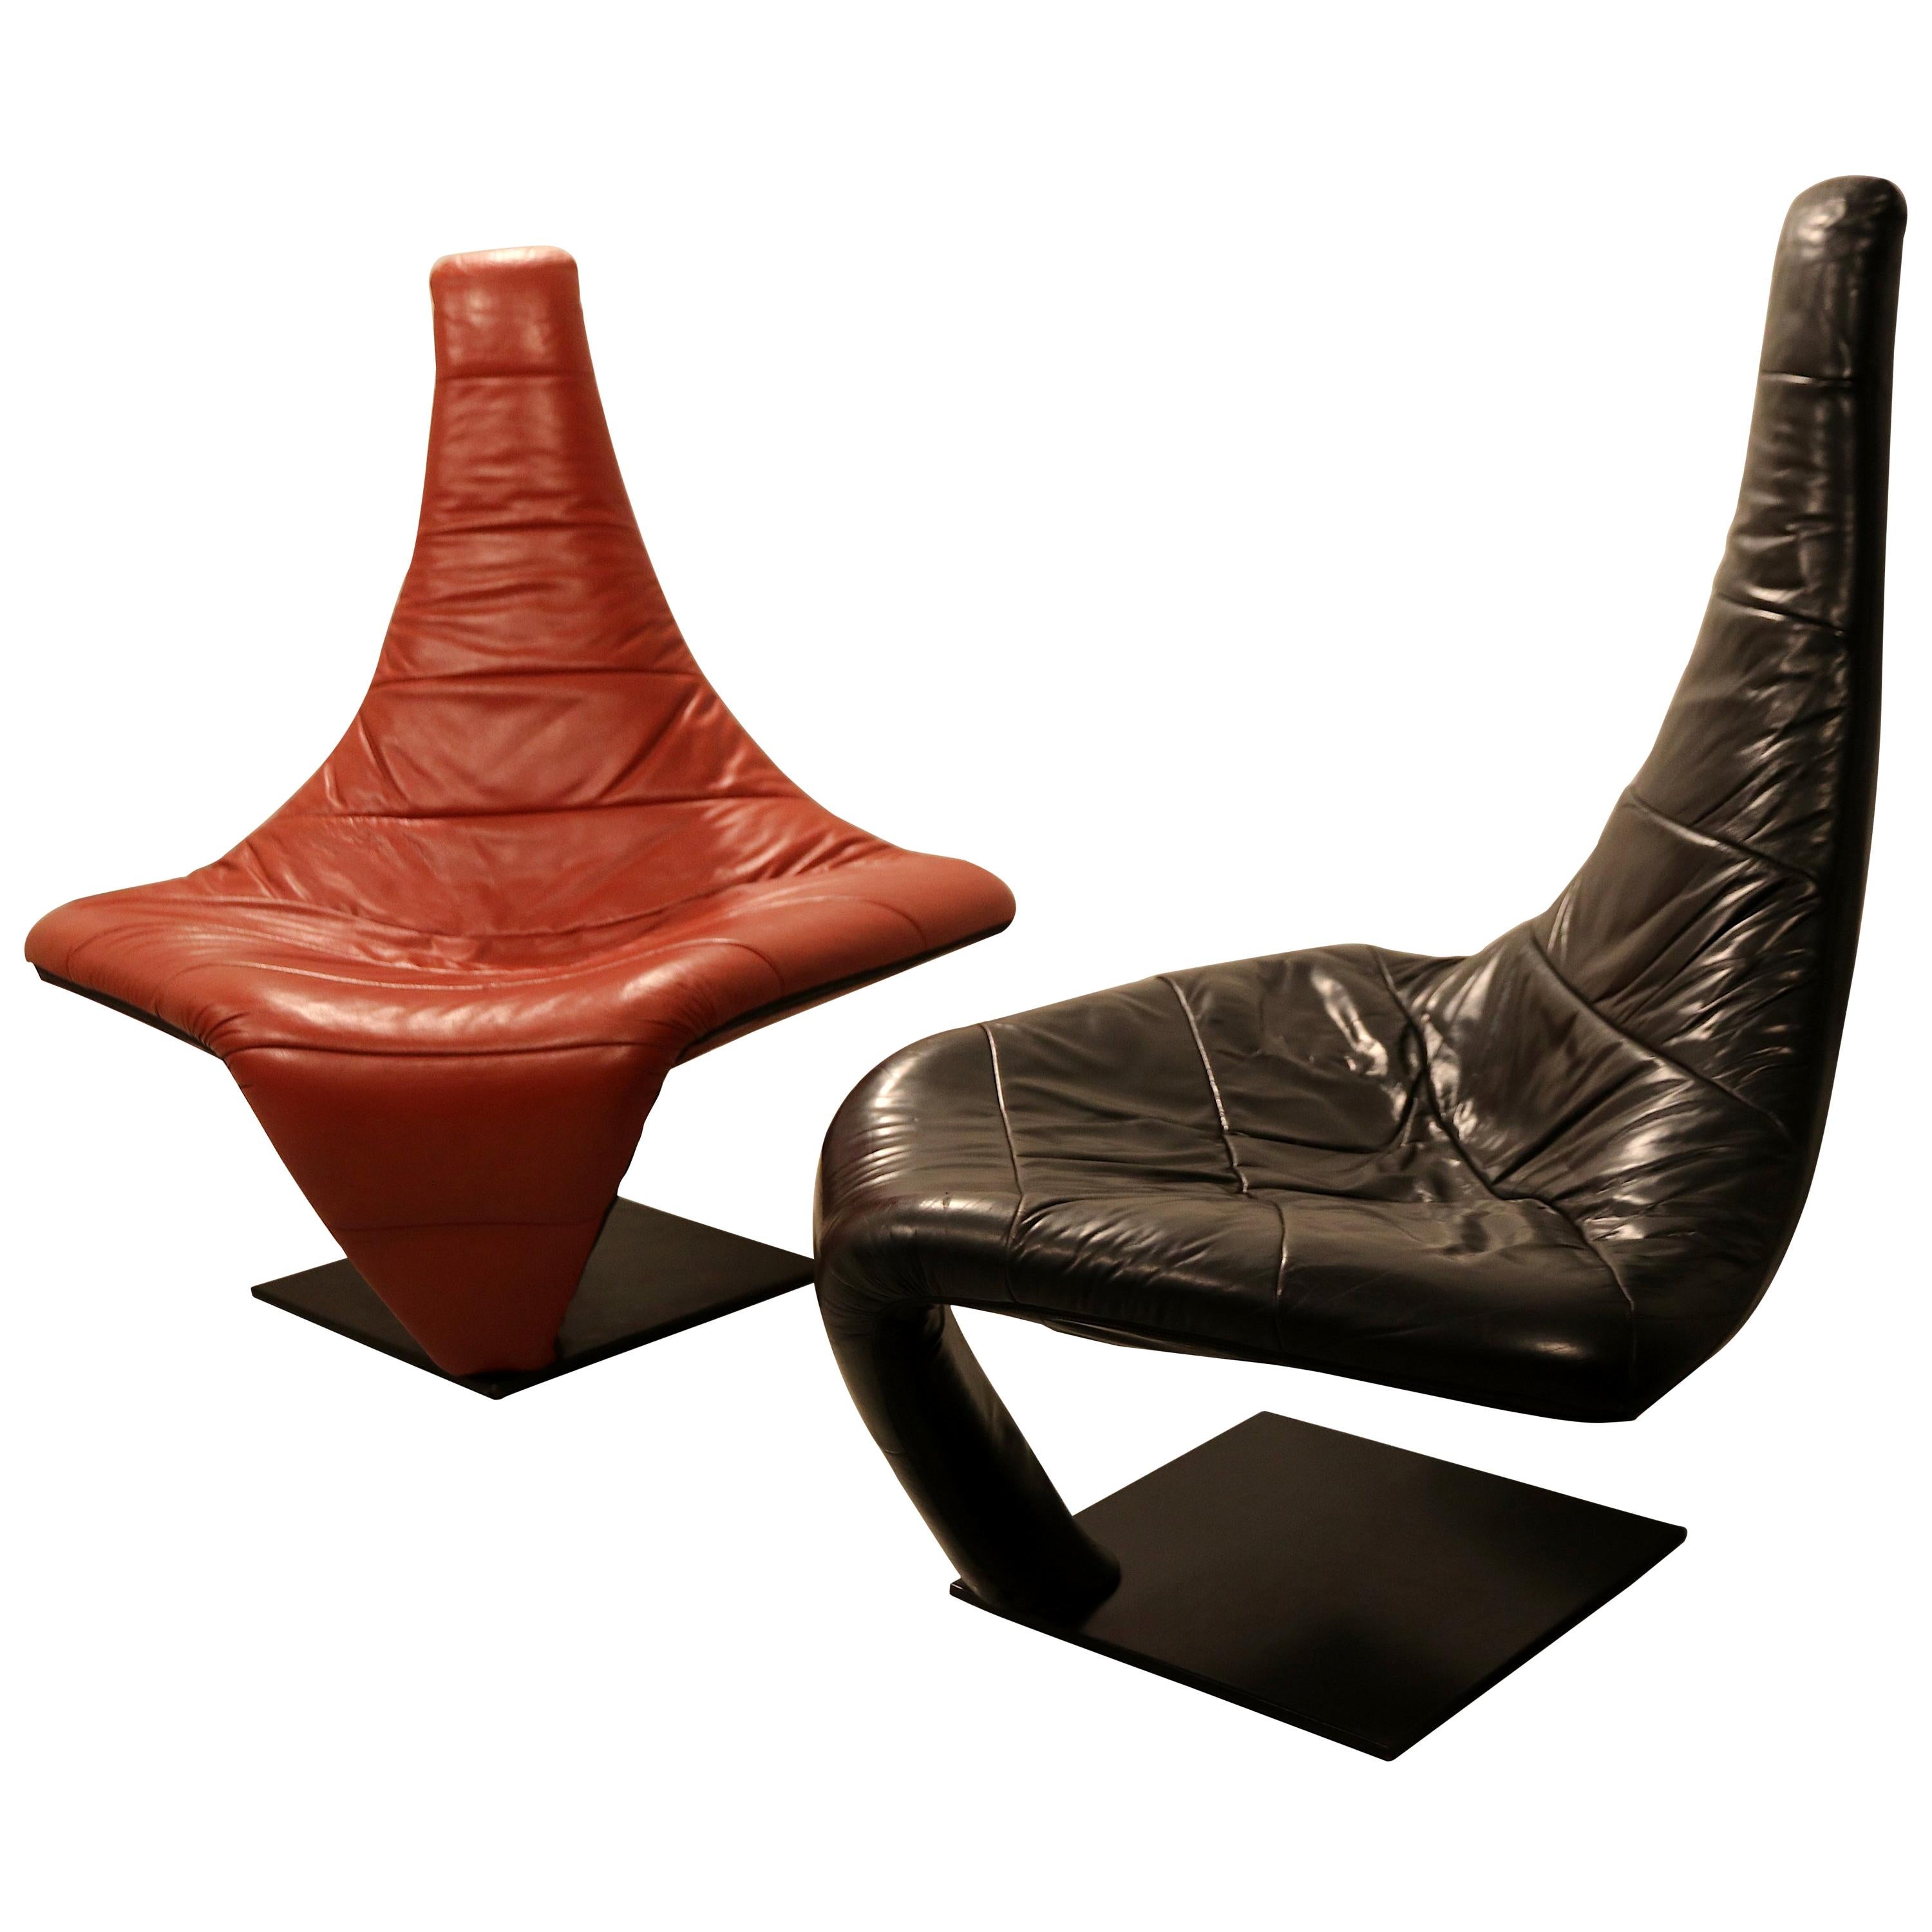 Jack Crebolder Lounge Chair "Turner" for Harvink, Dutch Design, 1982 For Sale